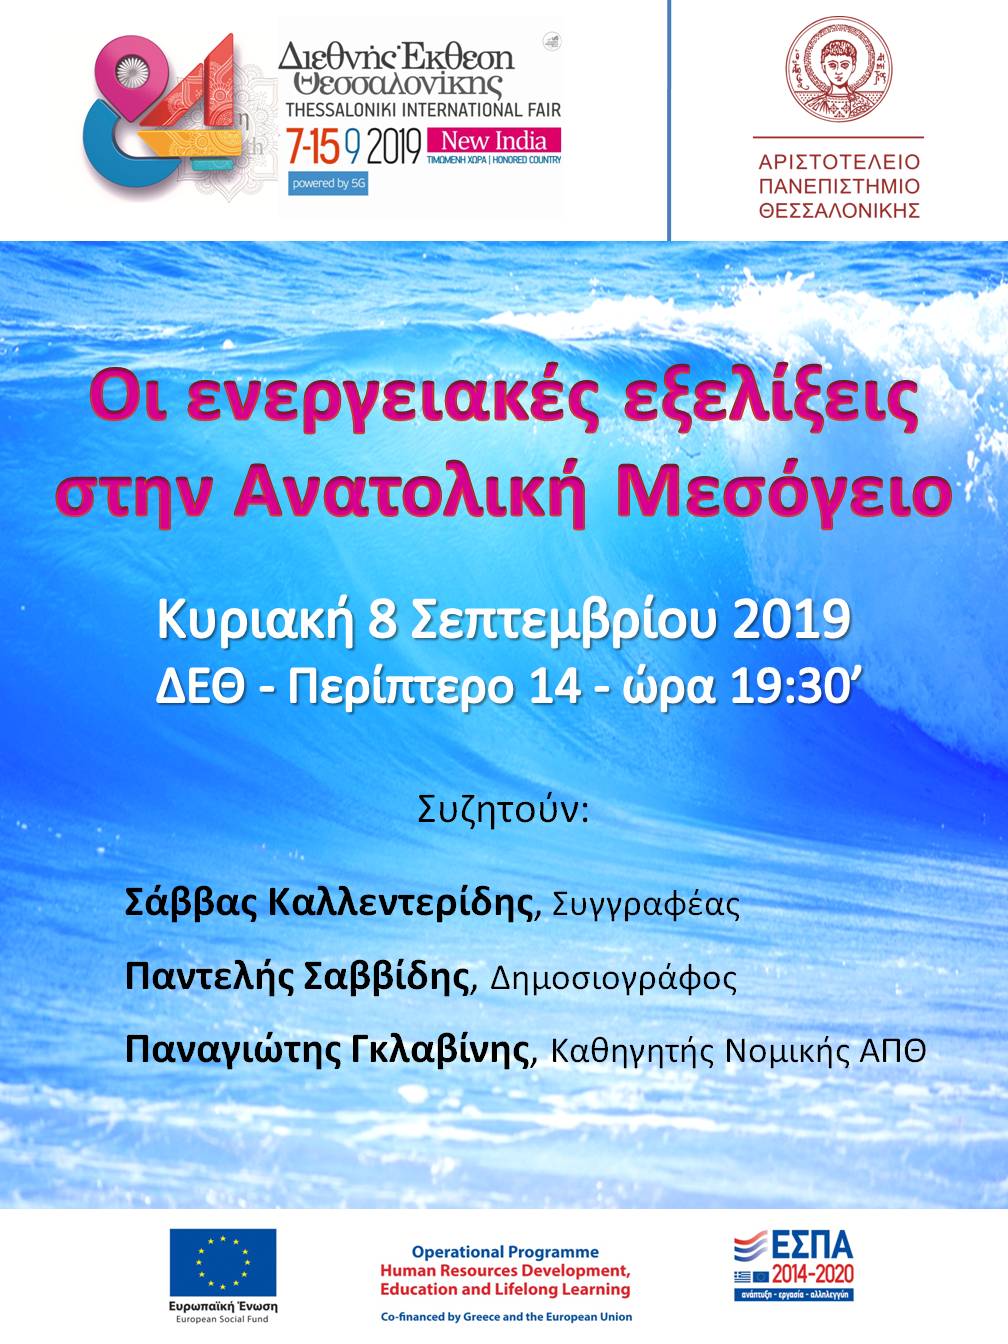 Εκδήλωση στη Θεσσαλονίκη τις 8 Σεπτεμβρίου με θέμα: Οι ενεργειακές εξελίξεις στην Ανατολική Μεσόγειο – Ομιλητές: Π. Γλαβίνης, Π. Σαββίδης, Σ. Καλεντερίδης